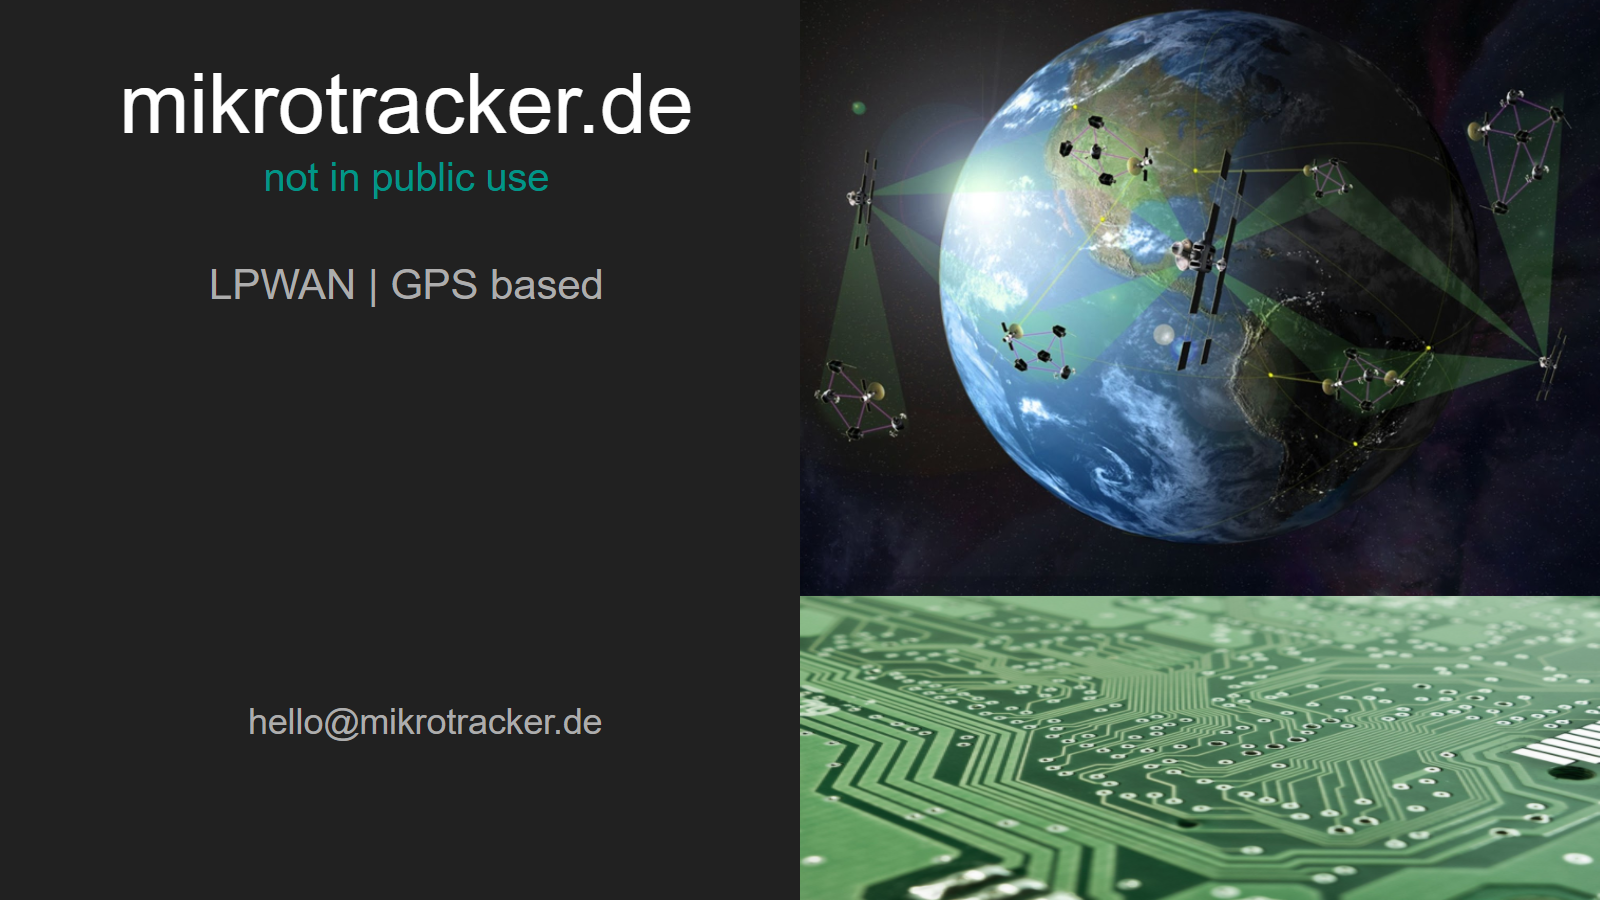 wwwmikrotracker.de